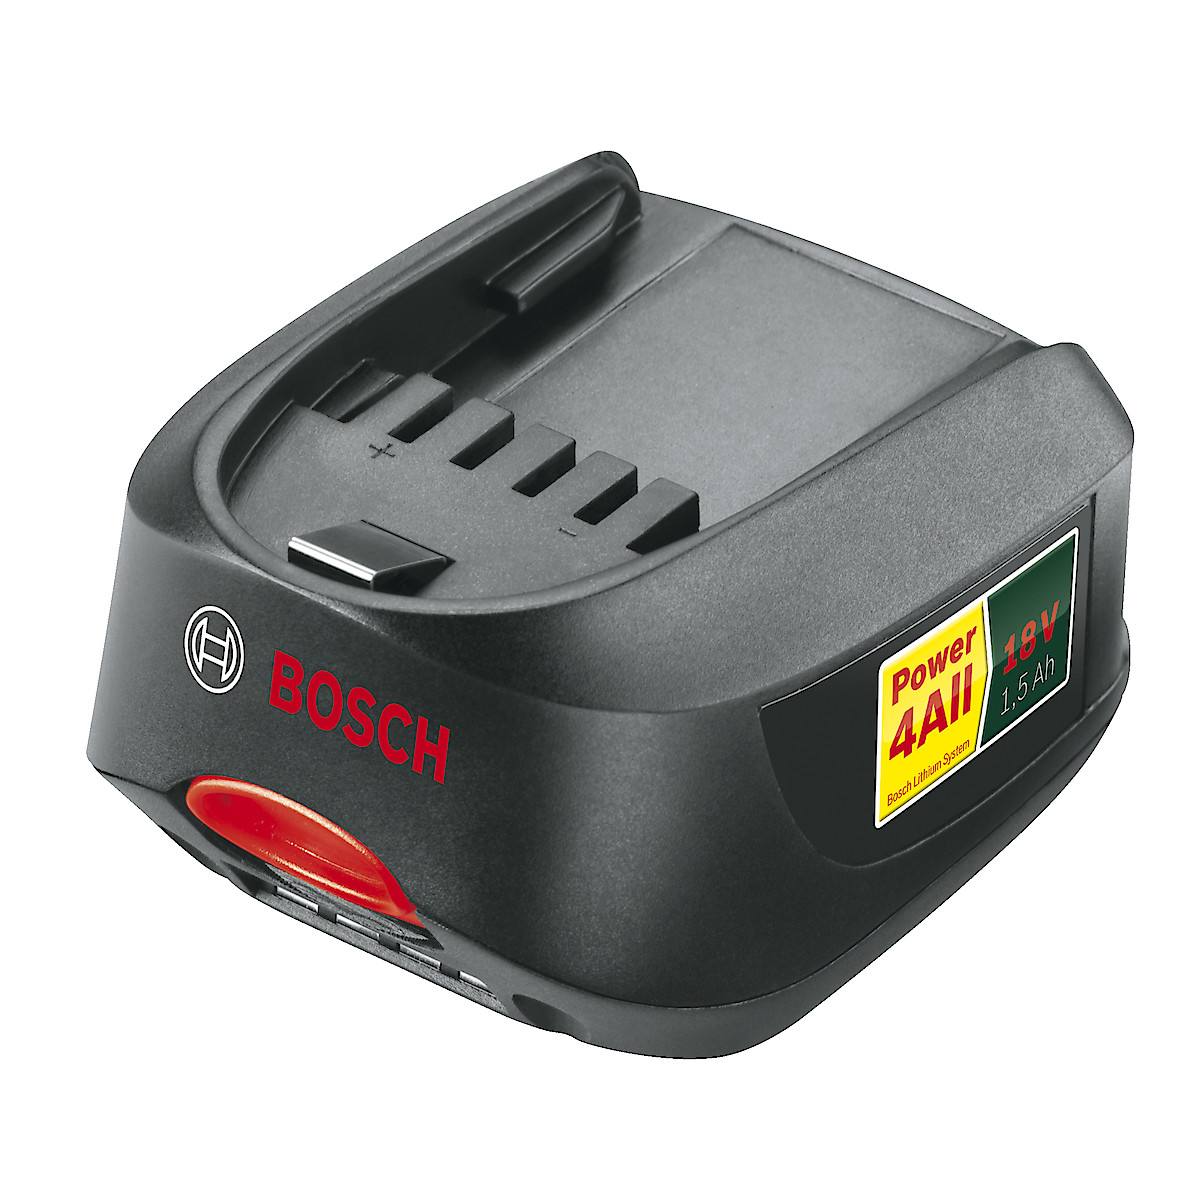 Bosch 18 V LI-batteri Power 4 All